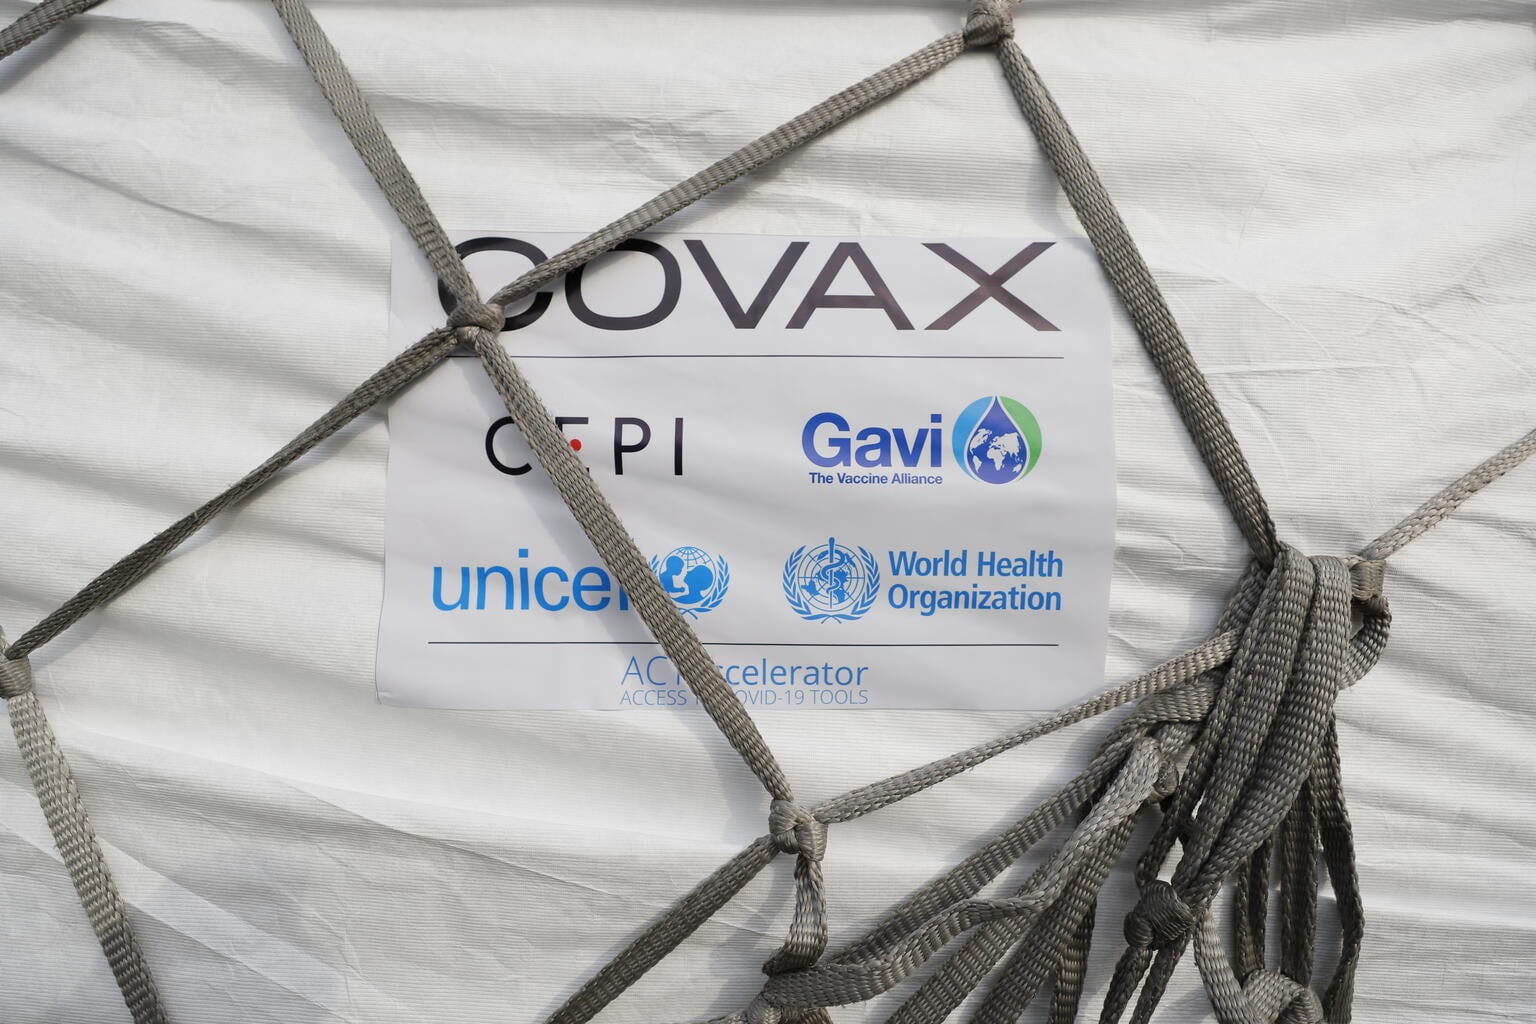 Перша поставка вакцини за програмою COVAX. Фото: WHO, UNICEF